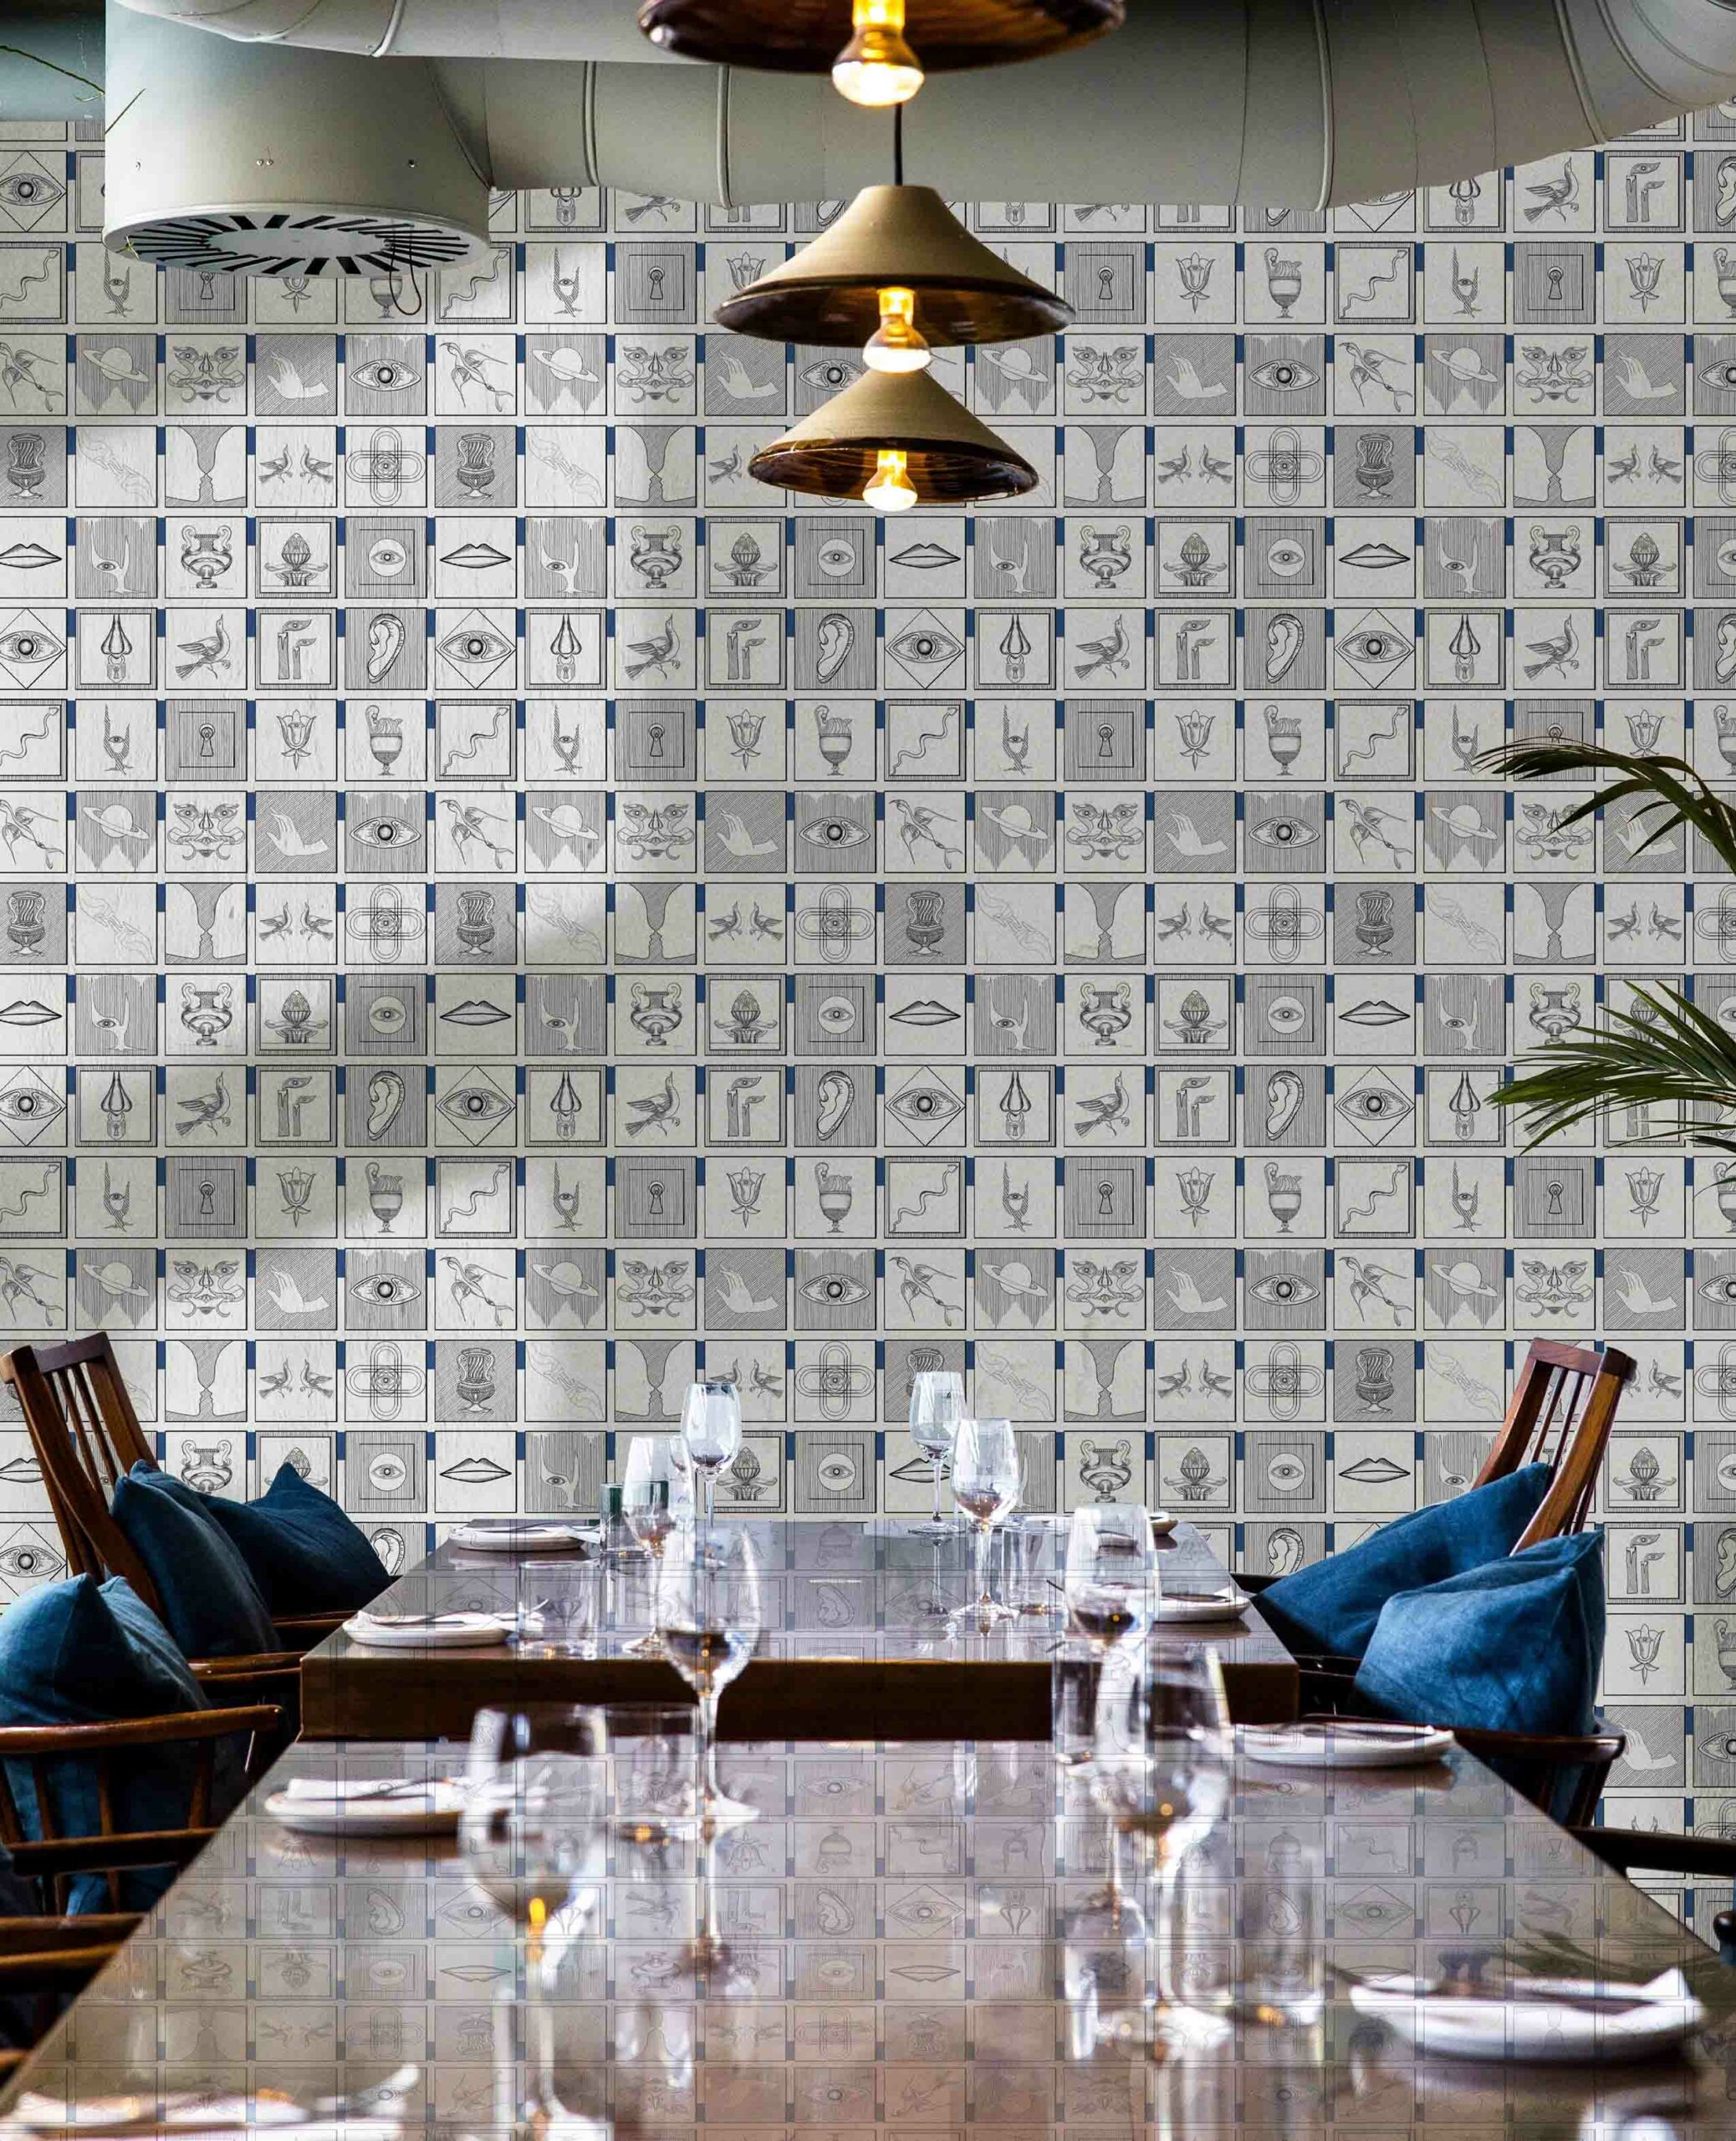 Alchemici-Bianco-e-blu-Berlino-MaVoix-elegant-dining-room-Wallpaper-collezione-Racconti